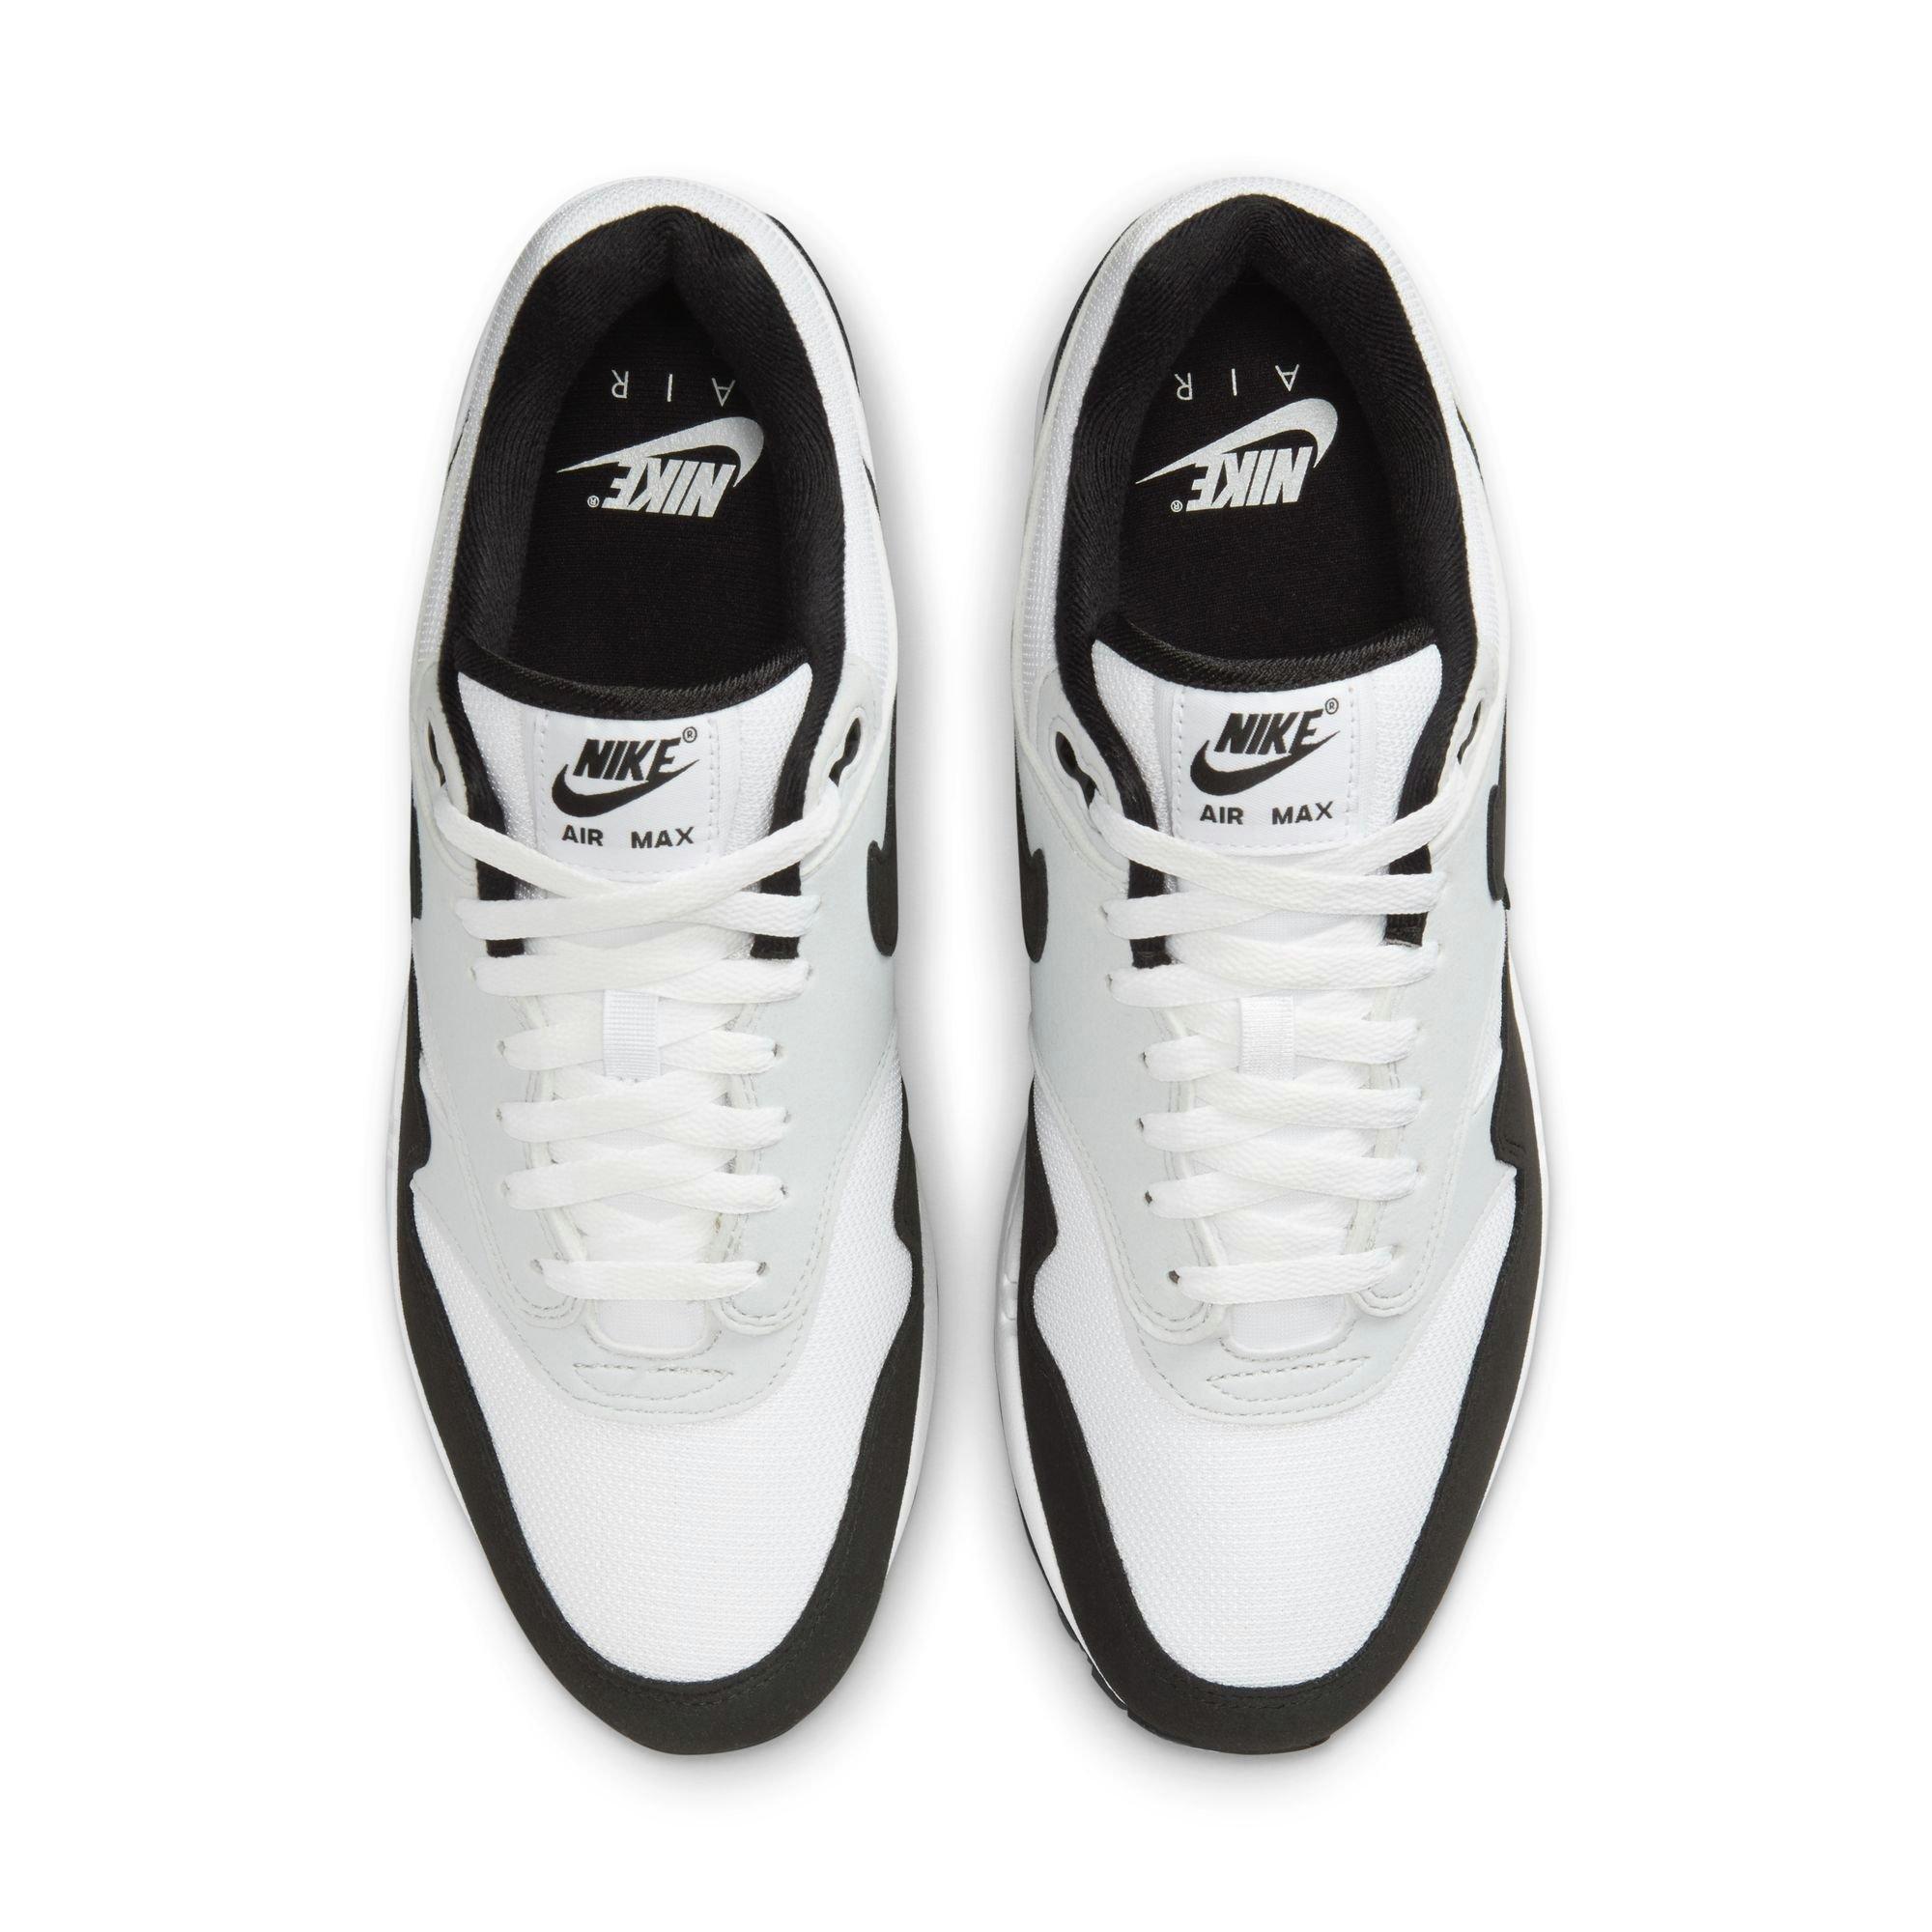 Men's shoes Nike Air Max 1 Premium Pure Platinum/ White-Black-Sport Red